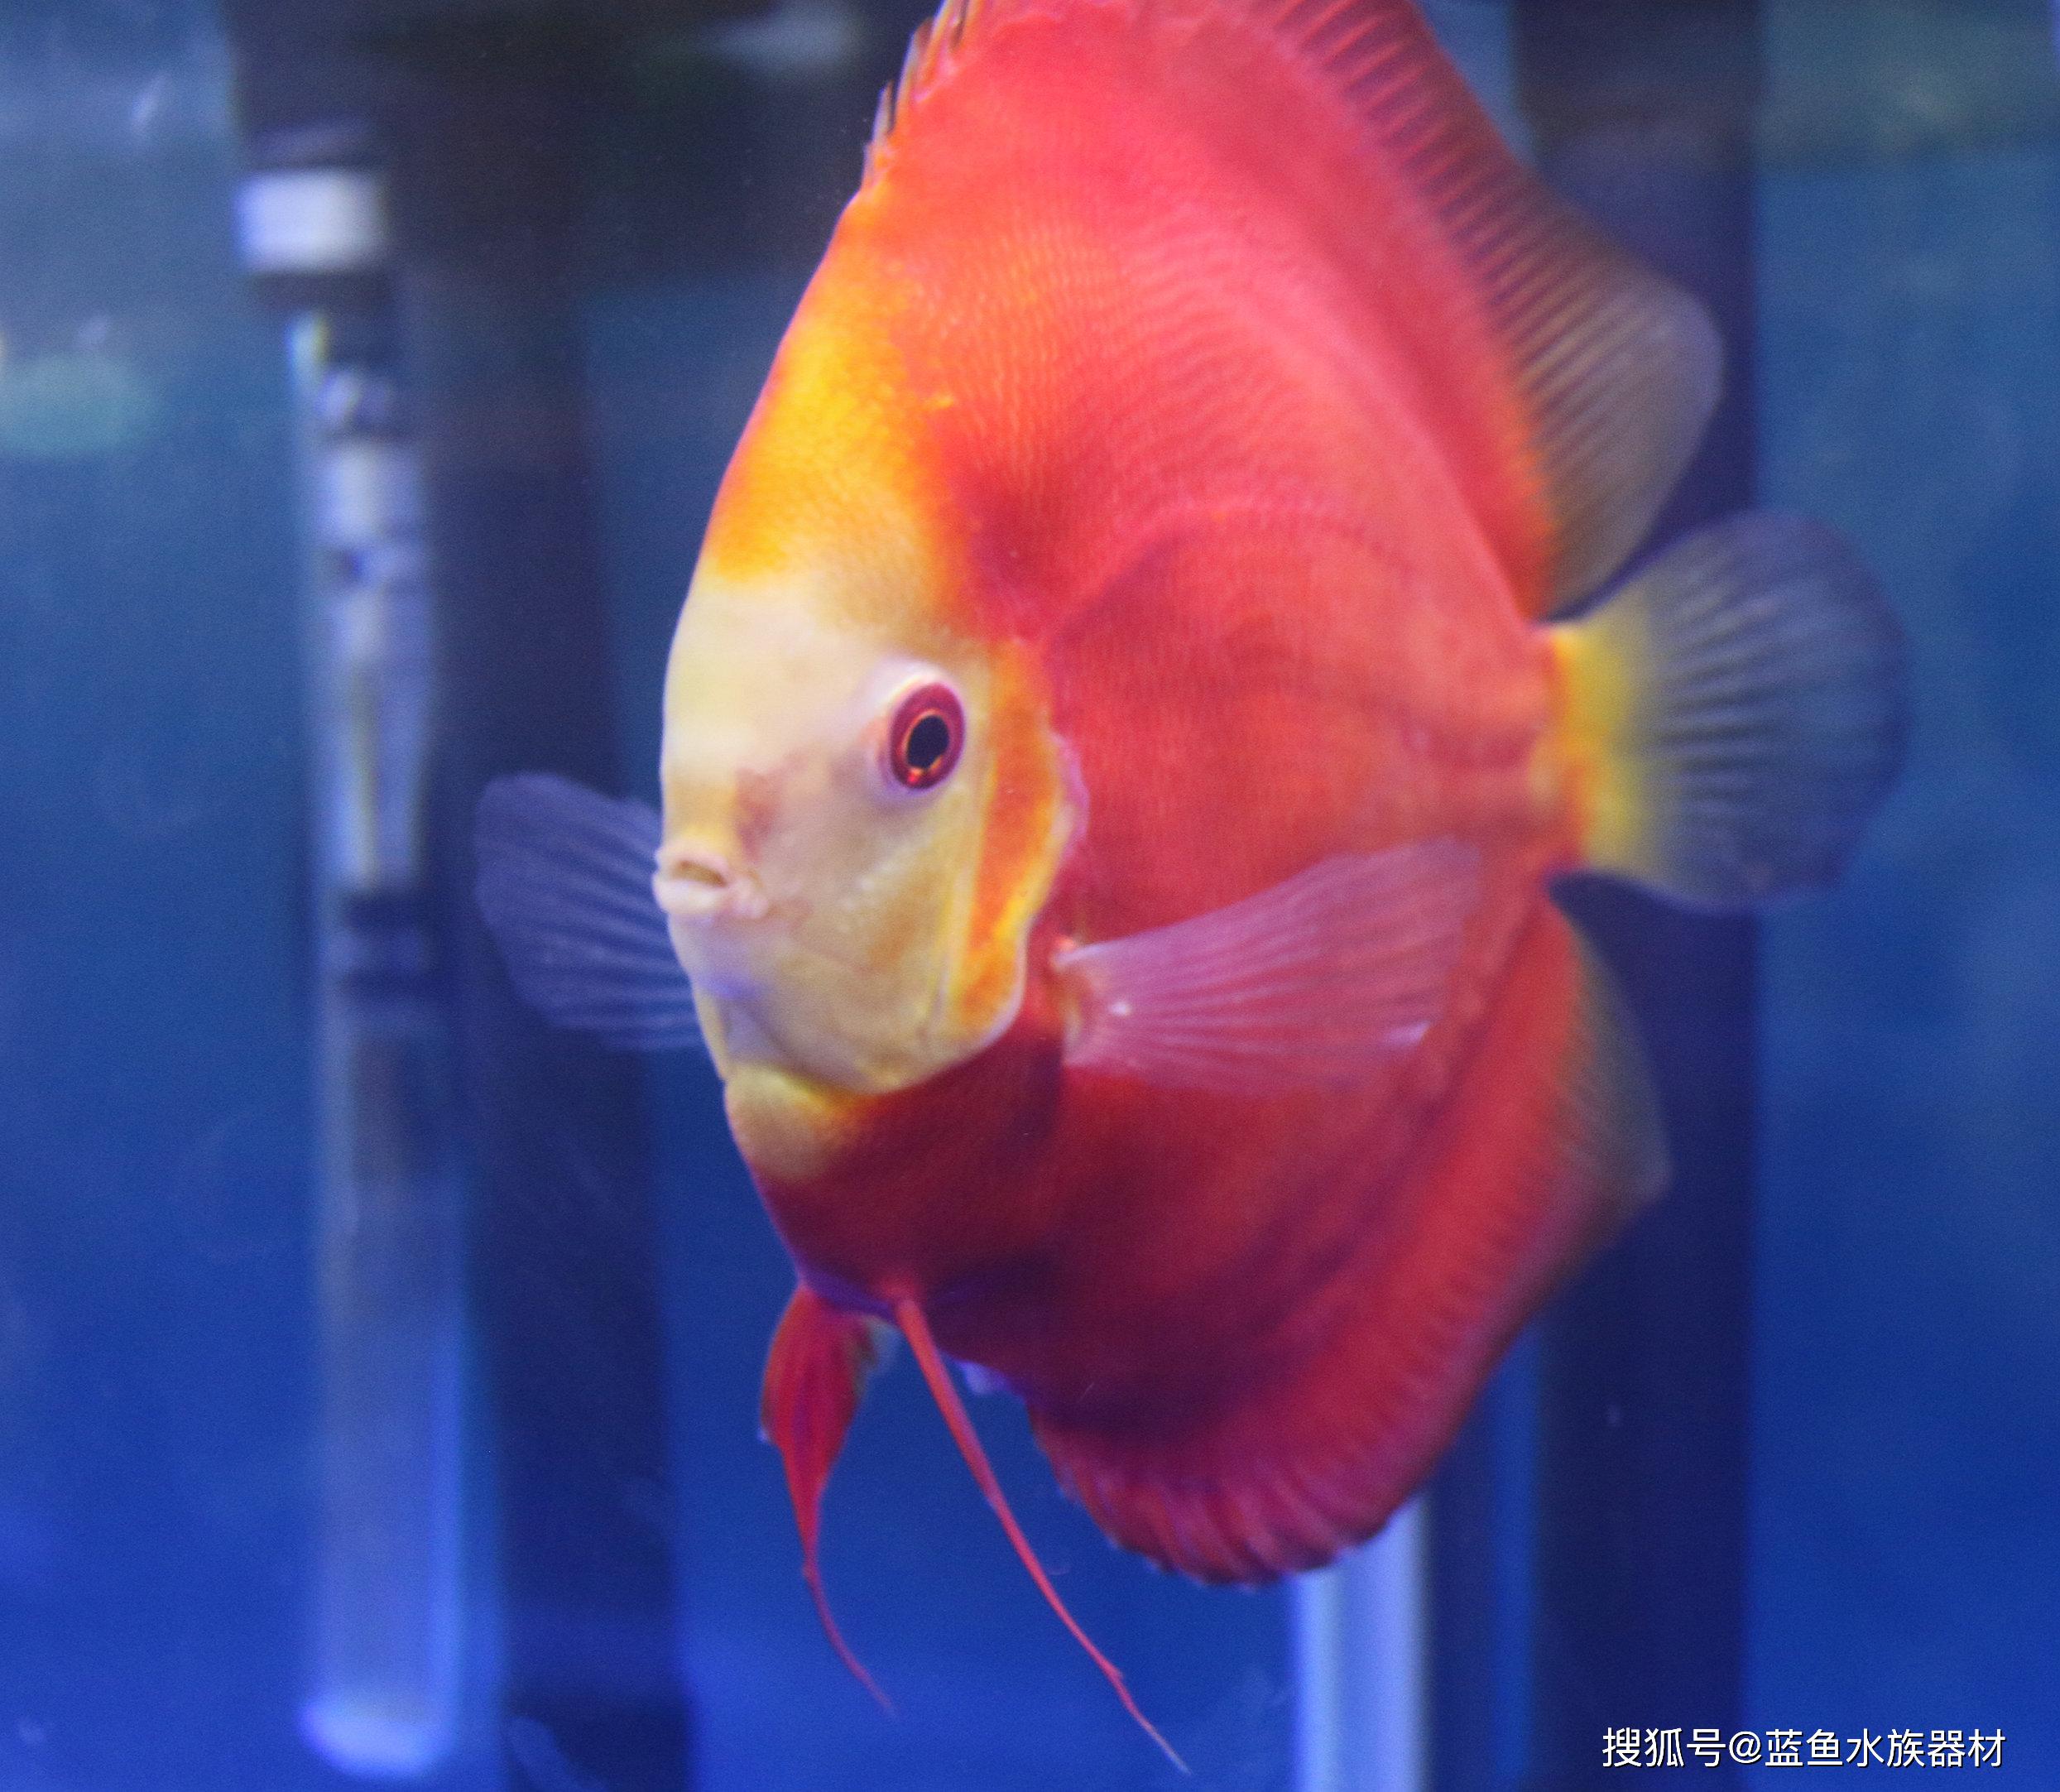 七彩神仙鱼虽然被叫做黄棕盘丽鱼或盘丽鱼